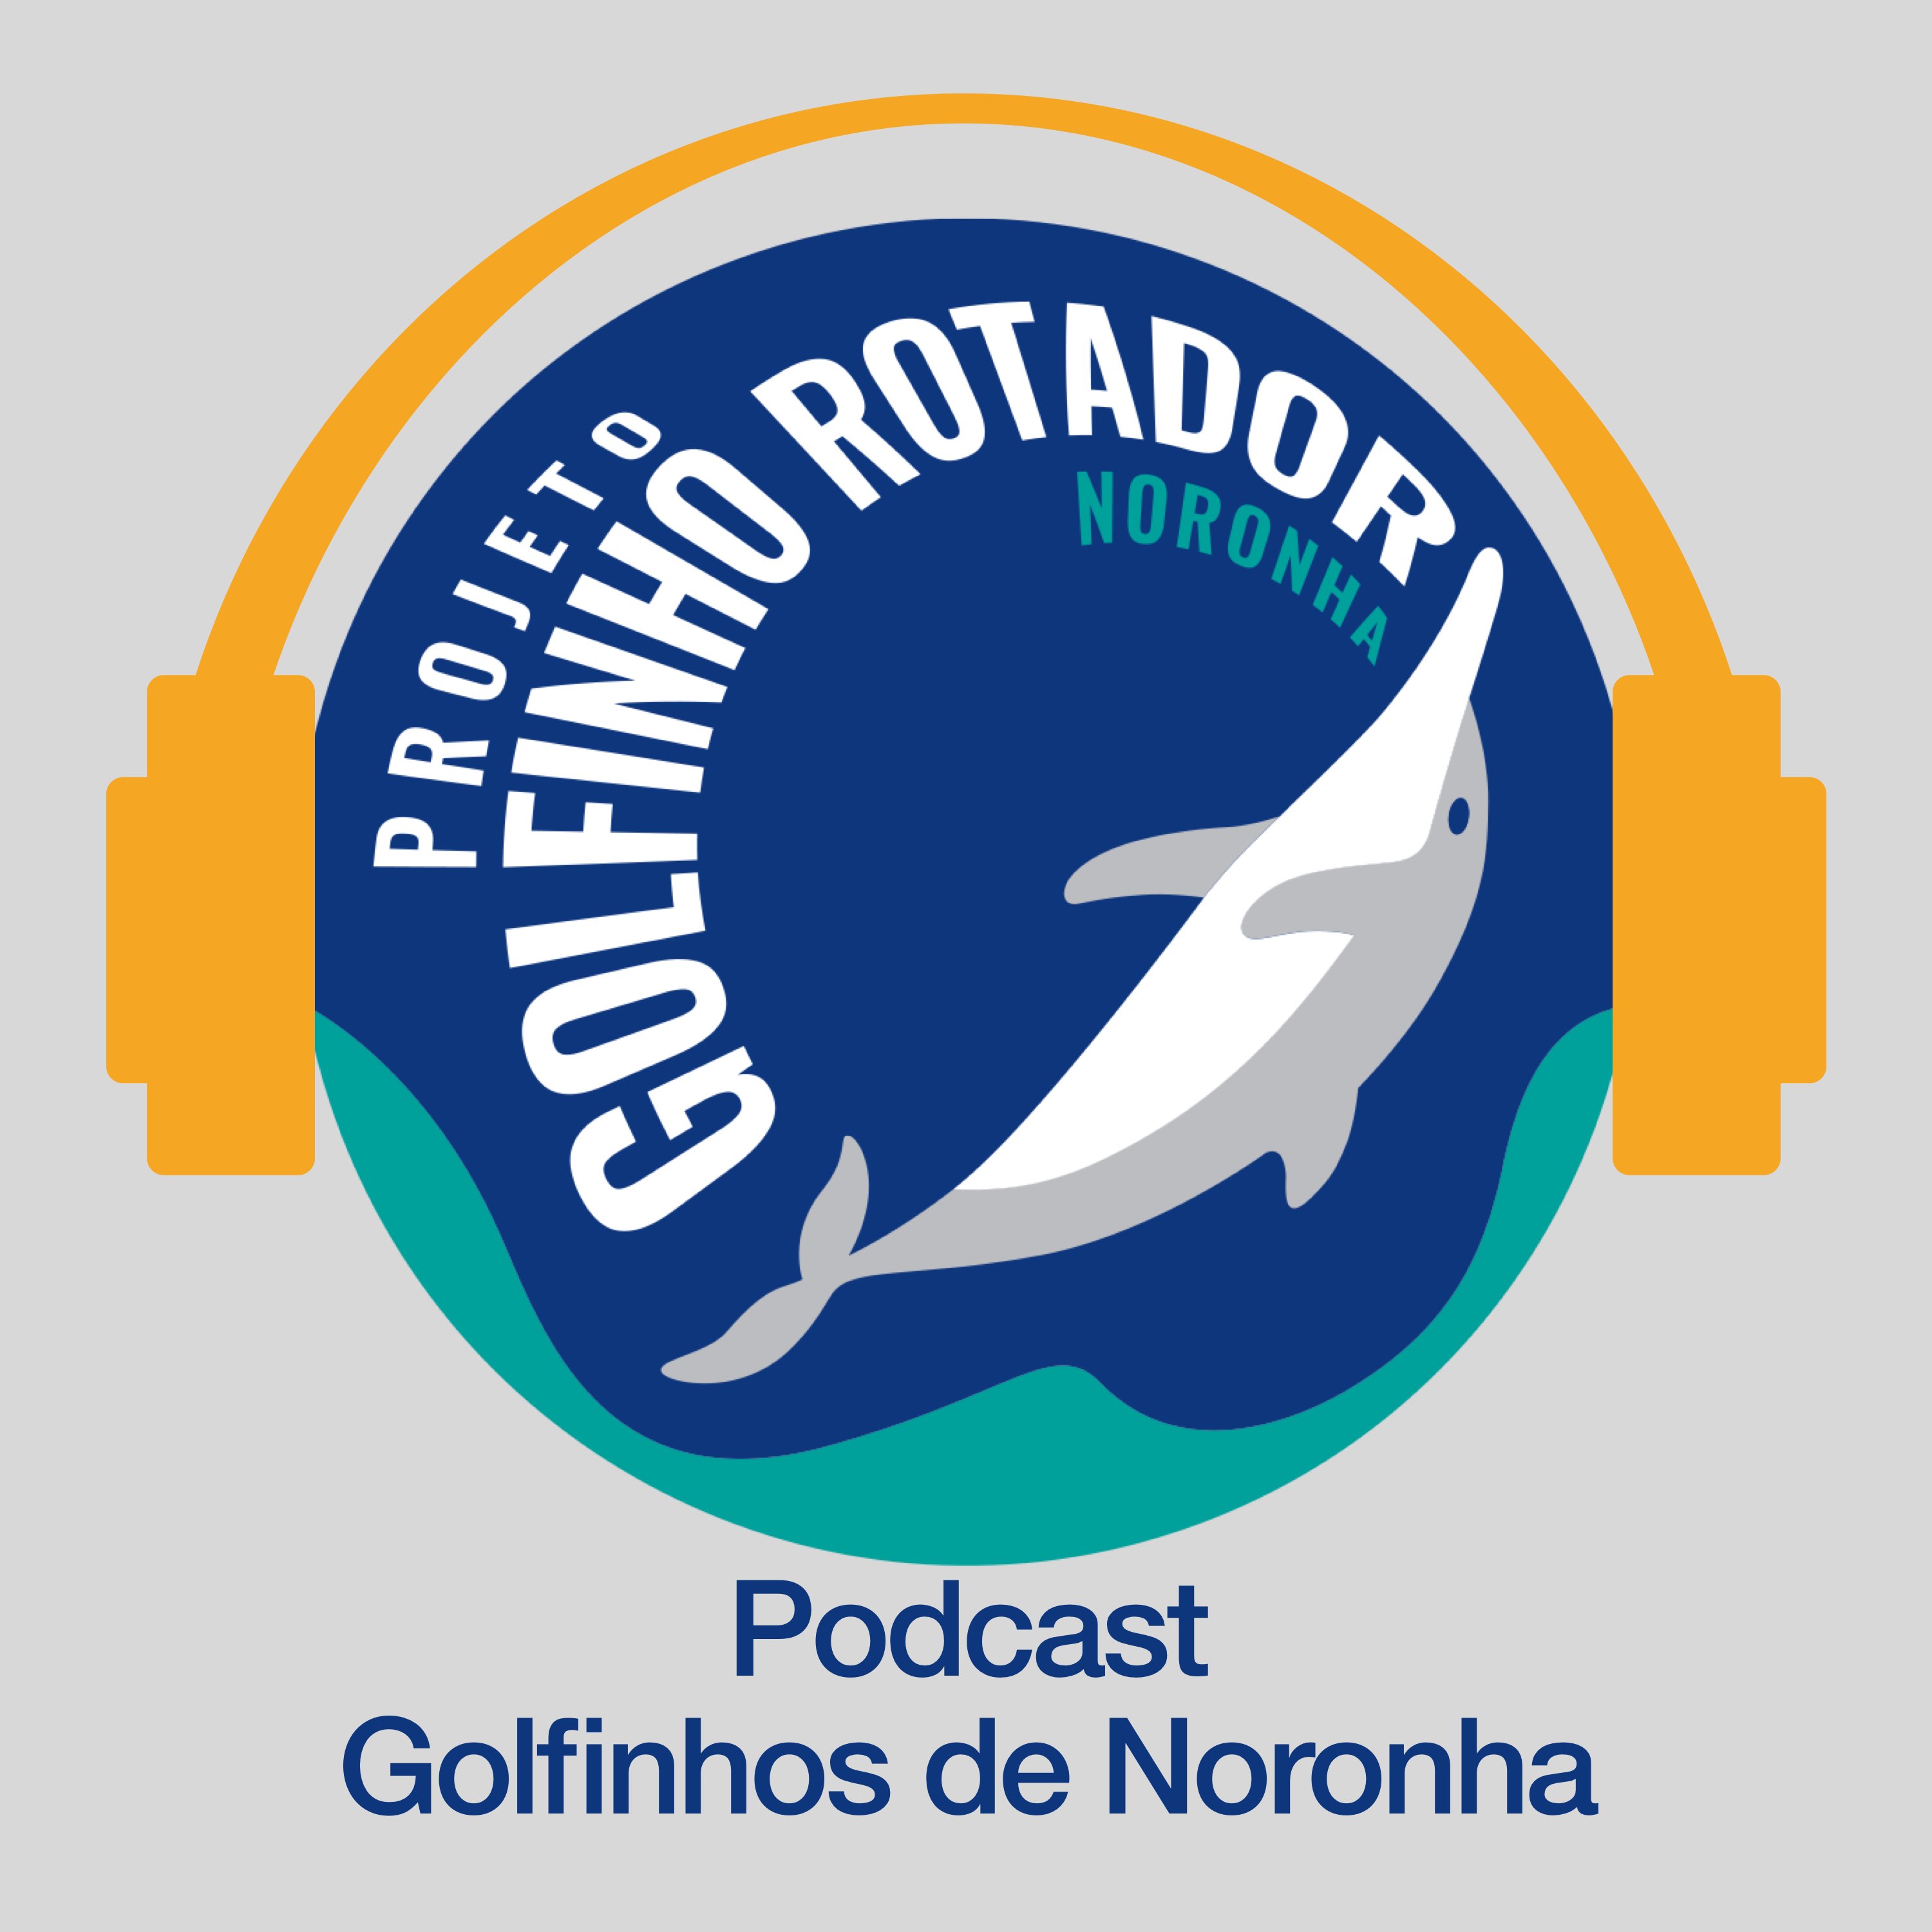 Projeto Golfinho Rotador contado pela nossa equipe! - Podcast Golfinhos de Noronha #18